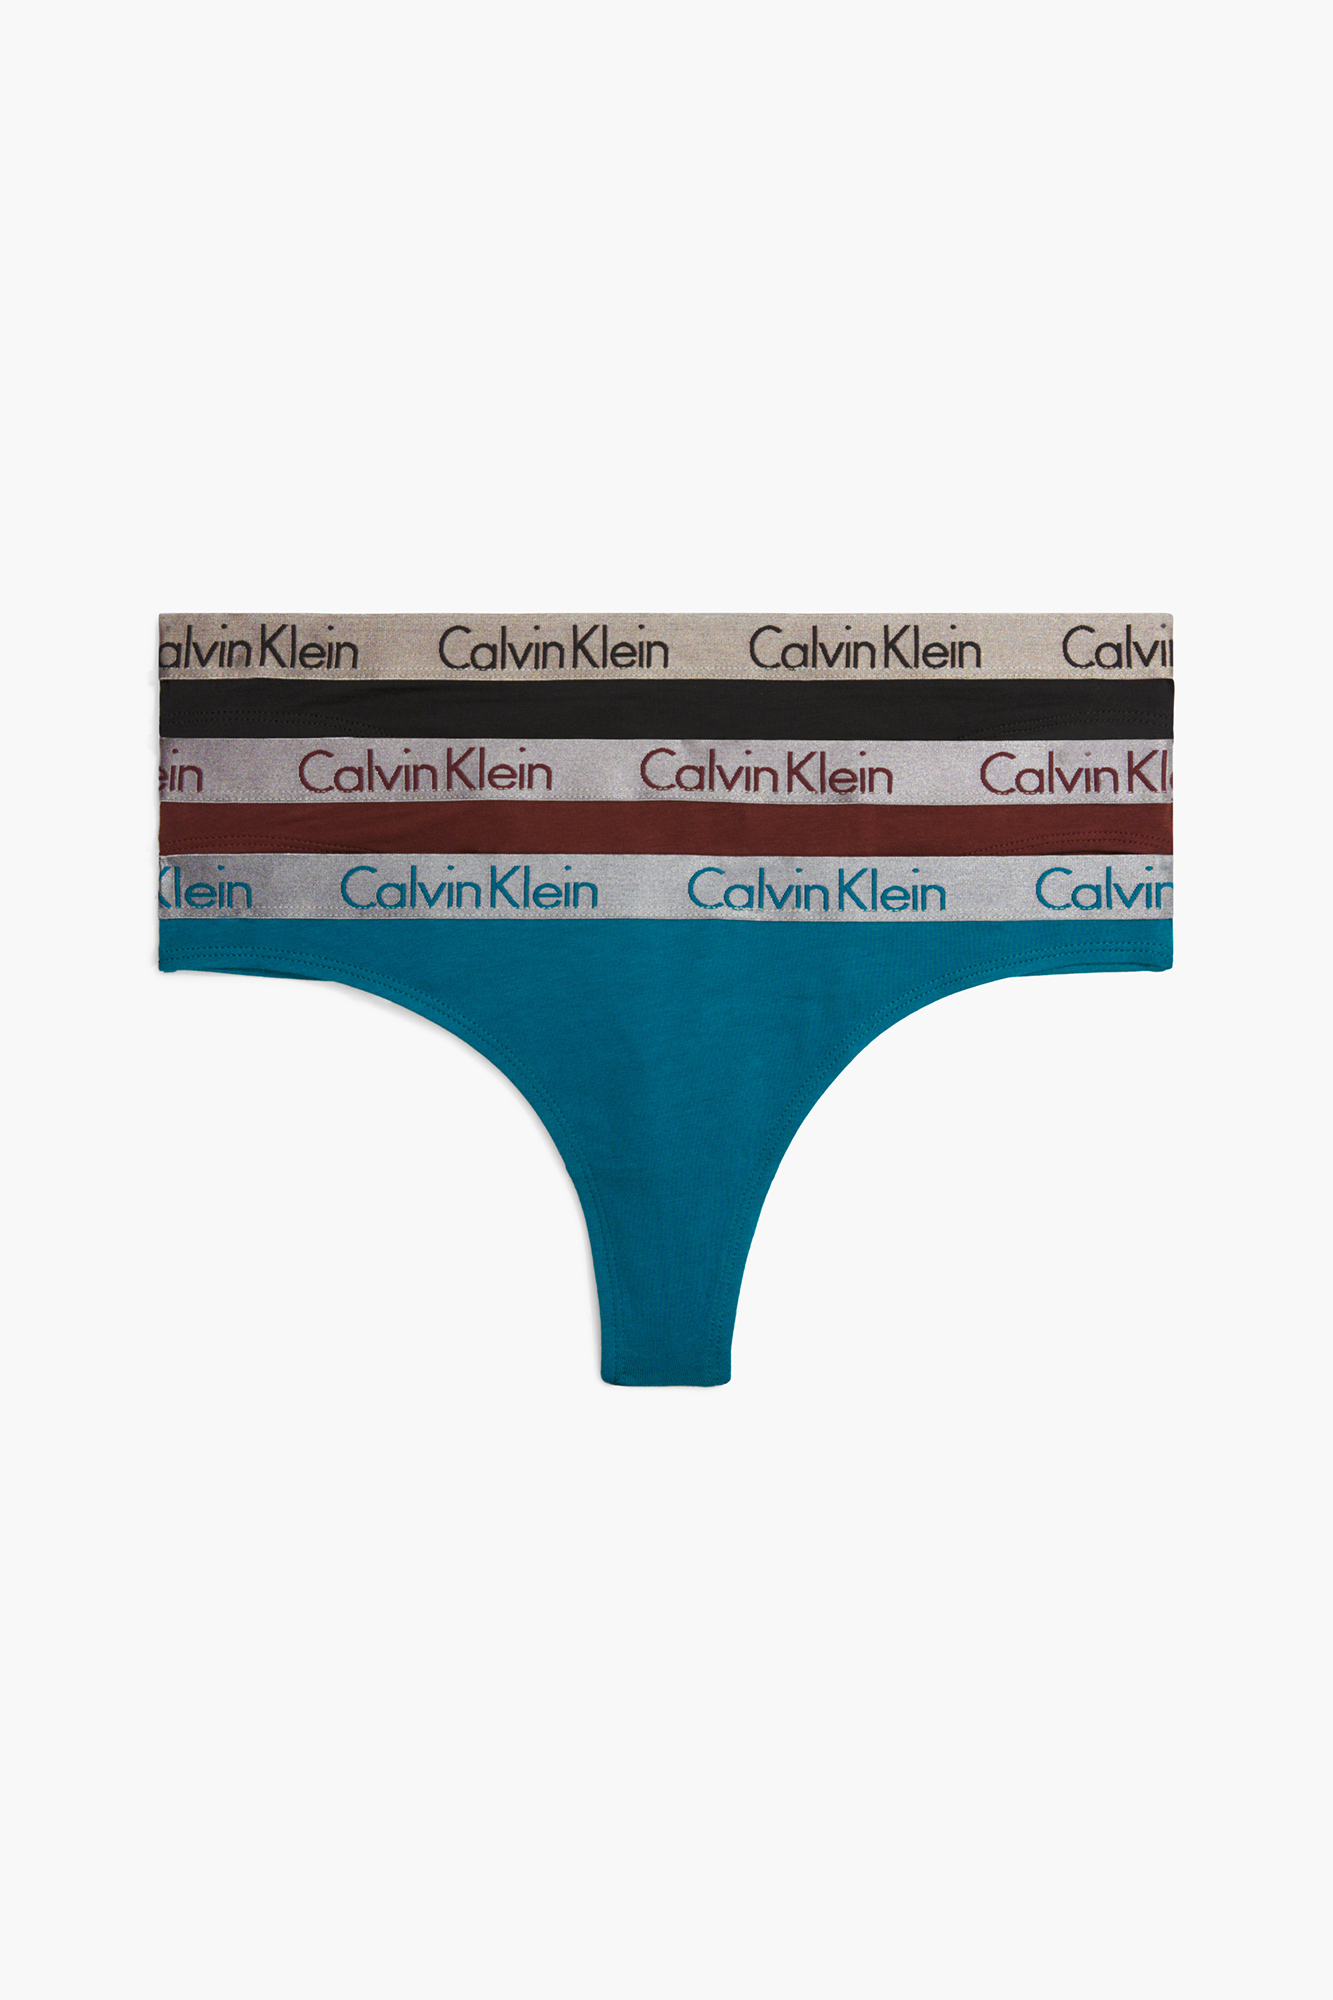 Cueca Calvin Klein Radiant Cotton